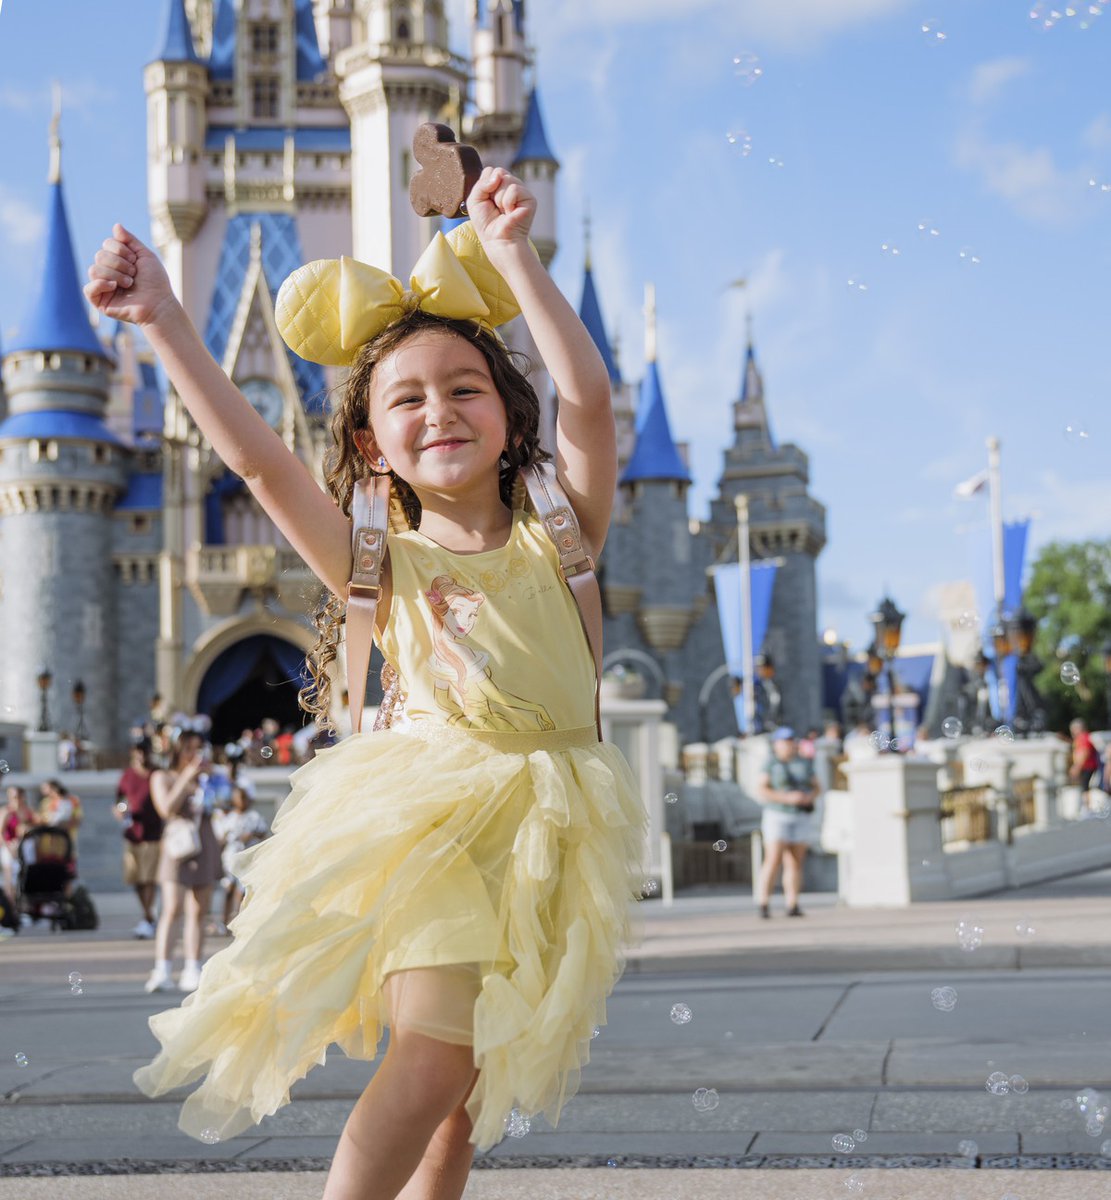 Cuando estás en el lugar donde vive la magia ✨ #DisneyDestinos #MagicKingdom #WaltDisneyWorld